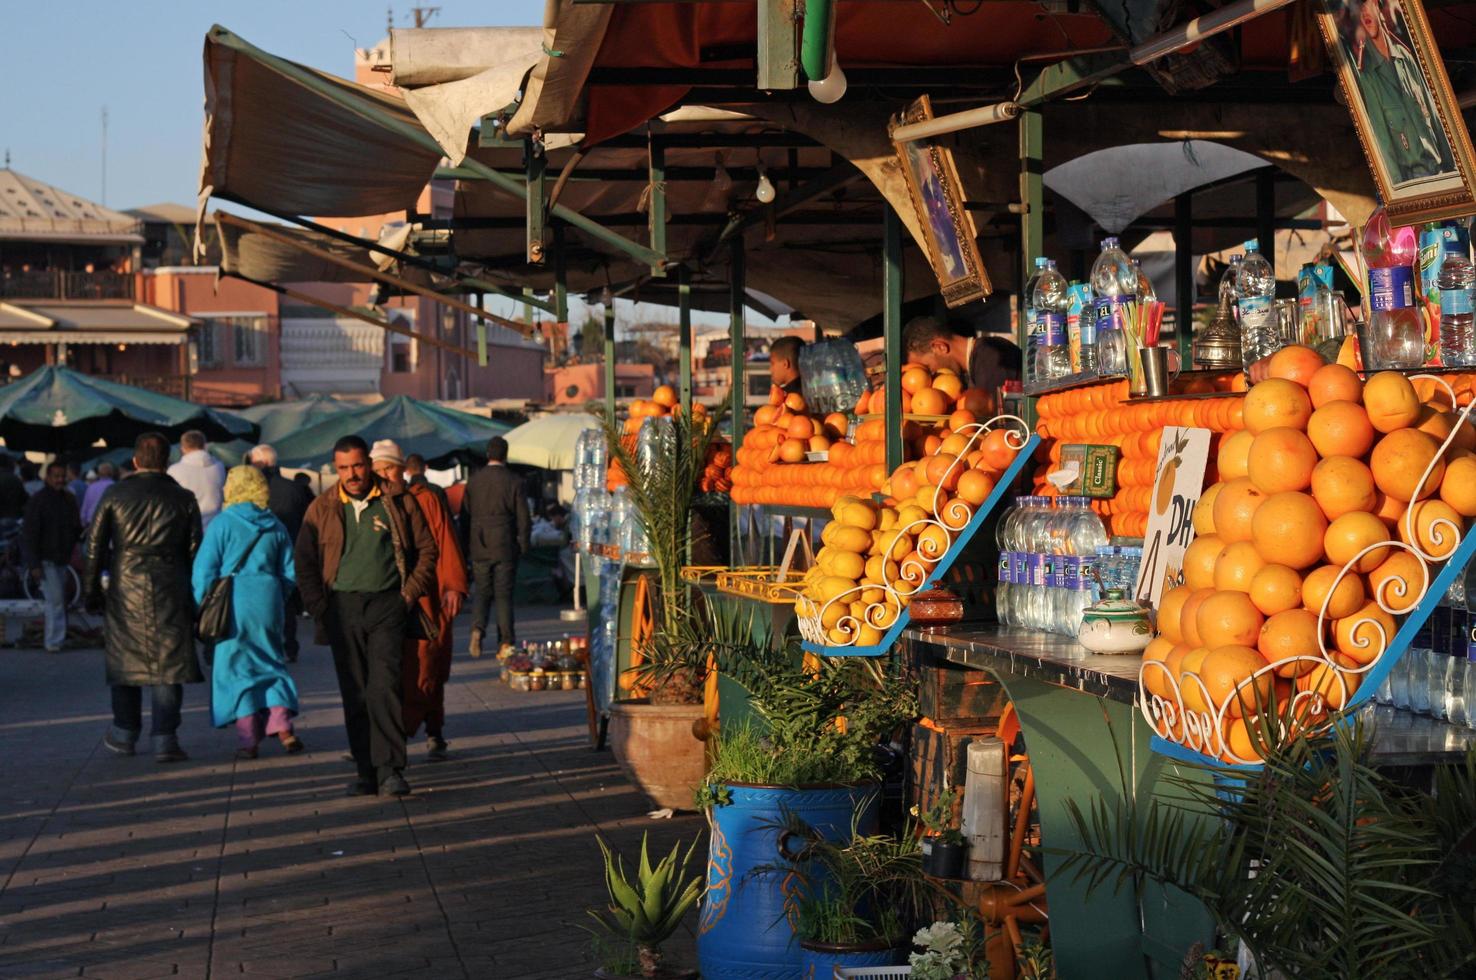 20 février 2018 - fruits frais et jus offerts au souk de marrakech, maroc photo